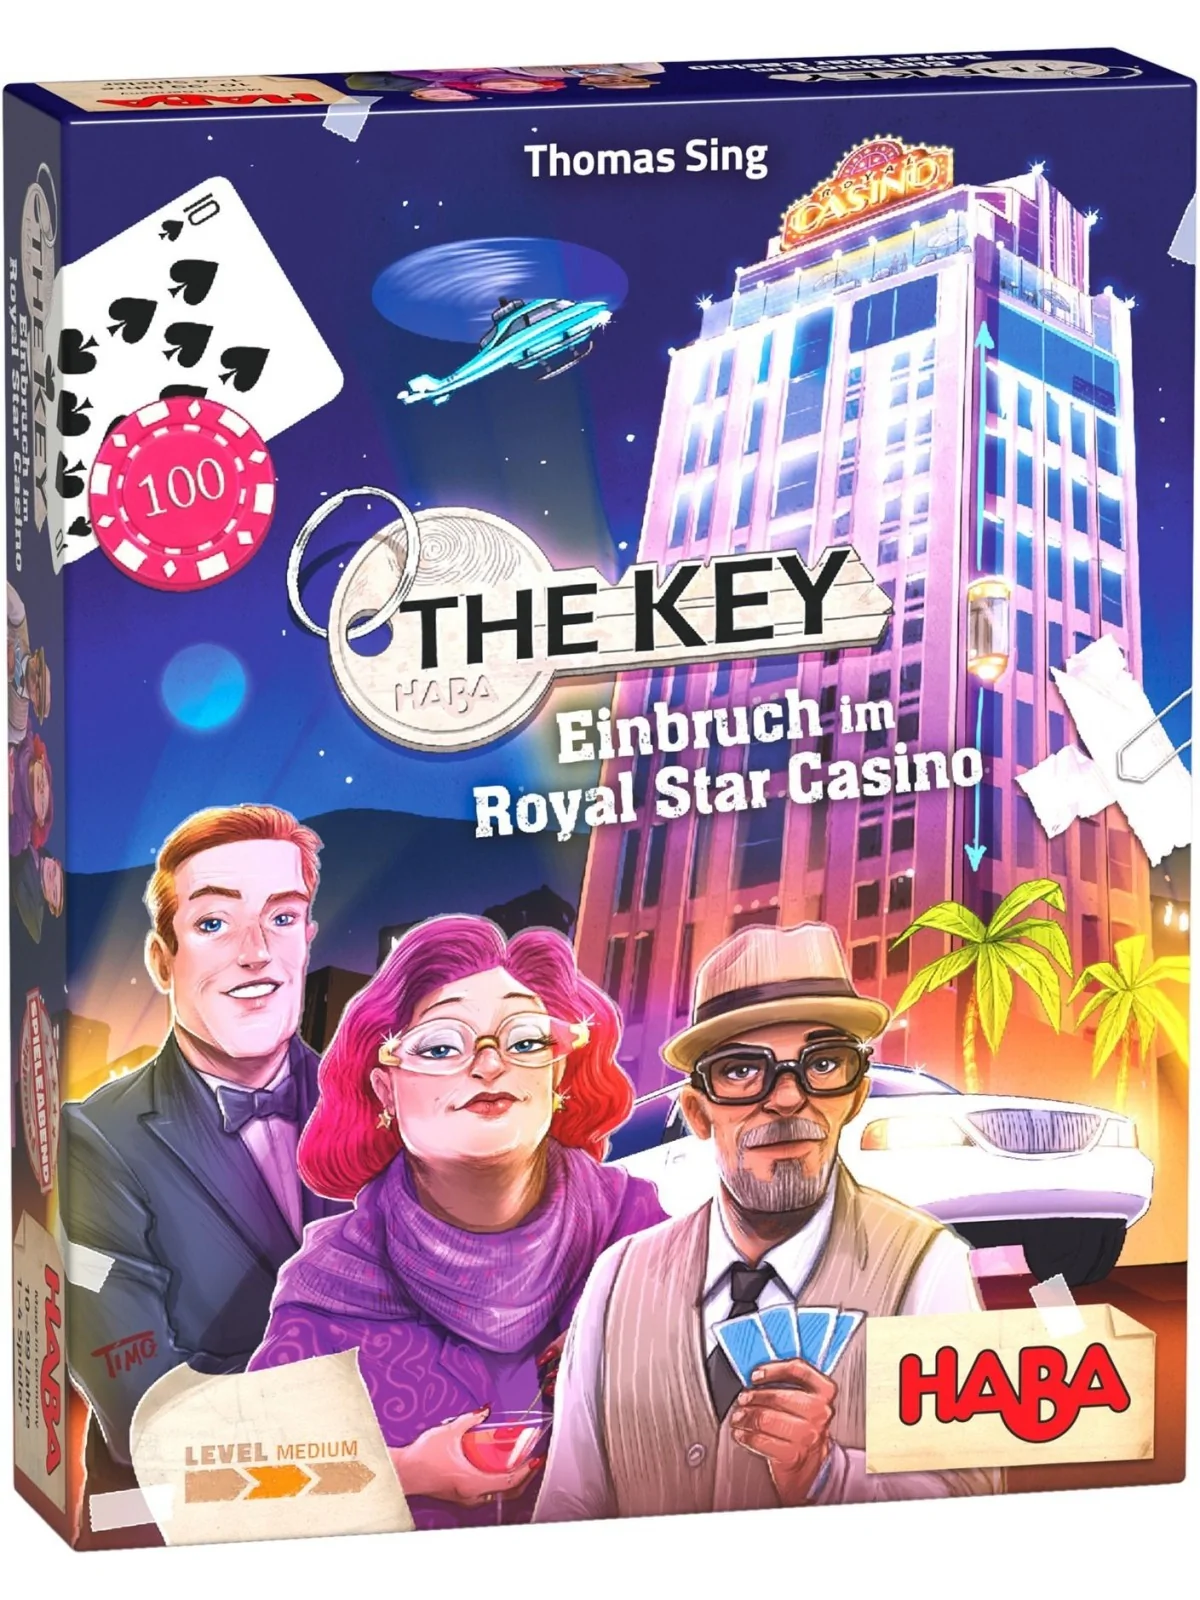 Comprar The Key: Robo en el Casino Royal Star barato al mejor precio 2